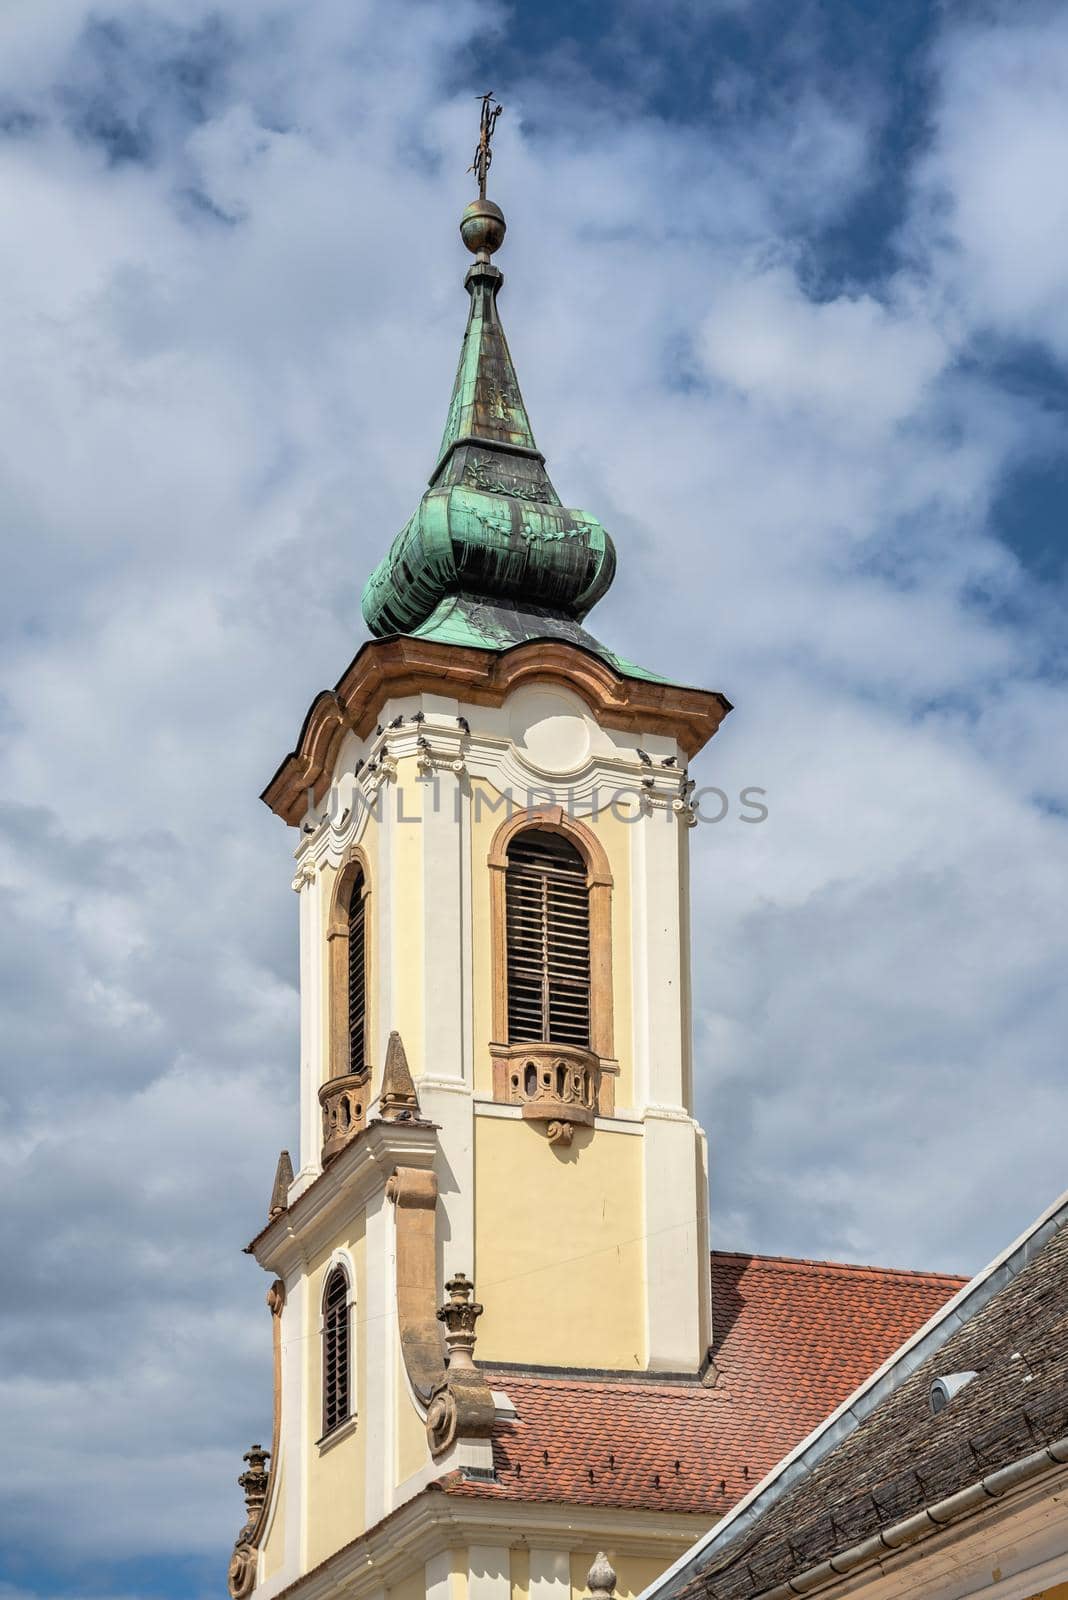 Blagovestenska church in Szentendre, Hungary by Multipedia